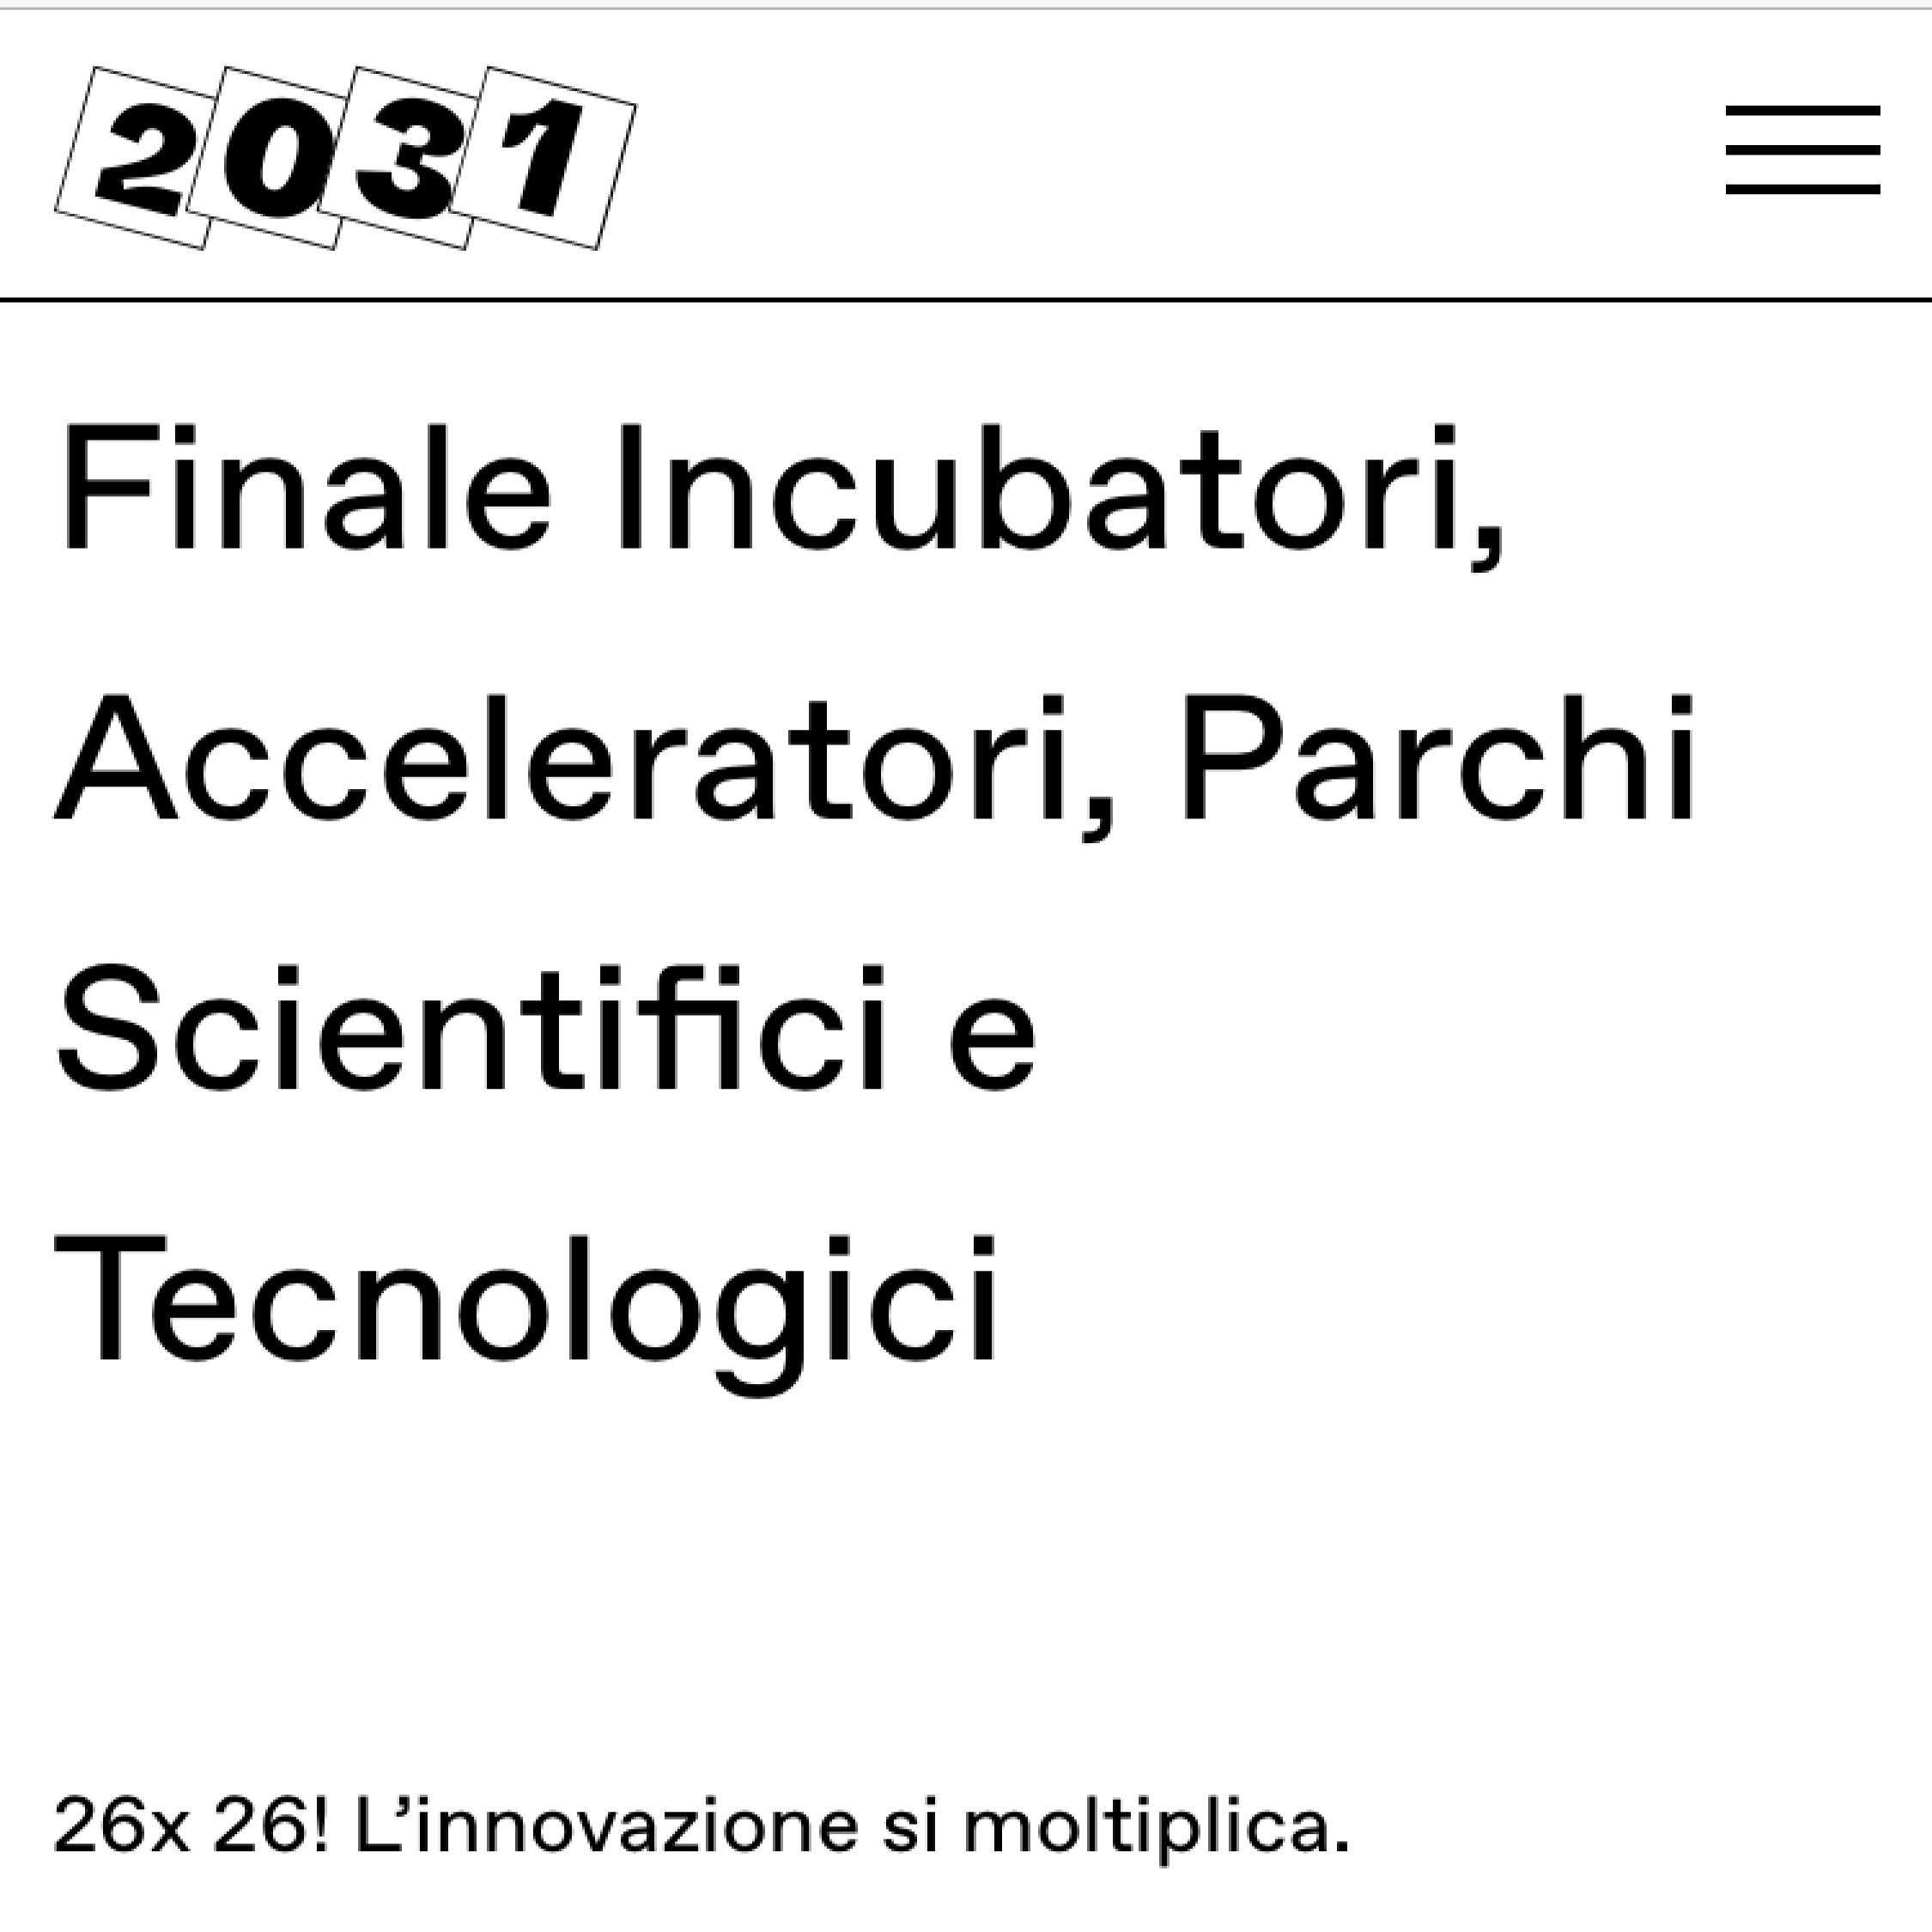 2031 - Nazena premiata alla finale incubatori, acceleratori, aprchi scientifici e tecnologici